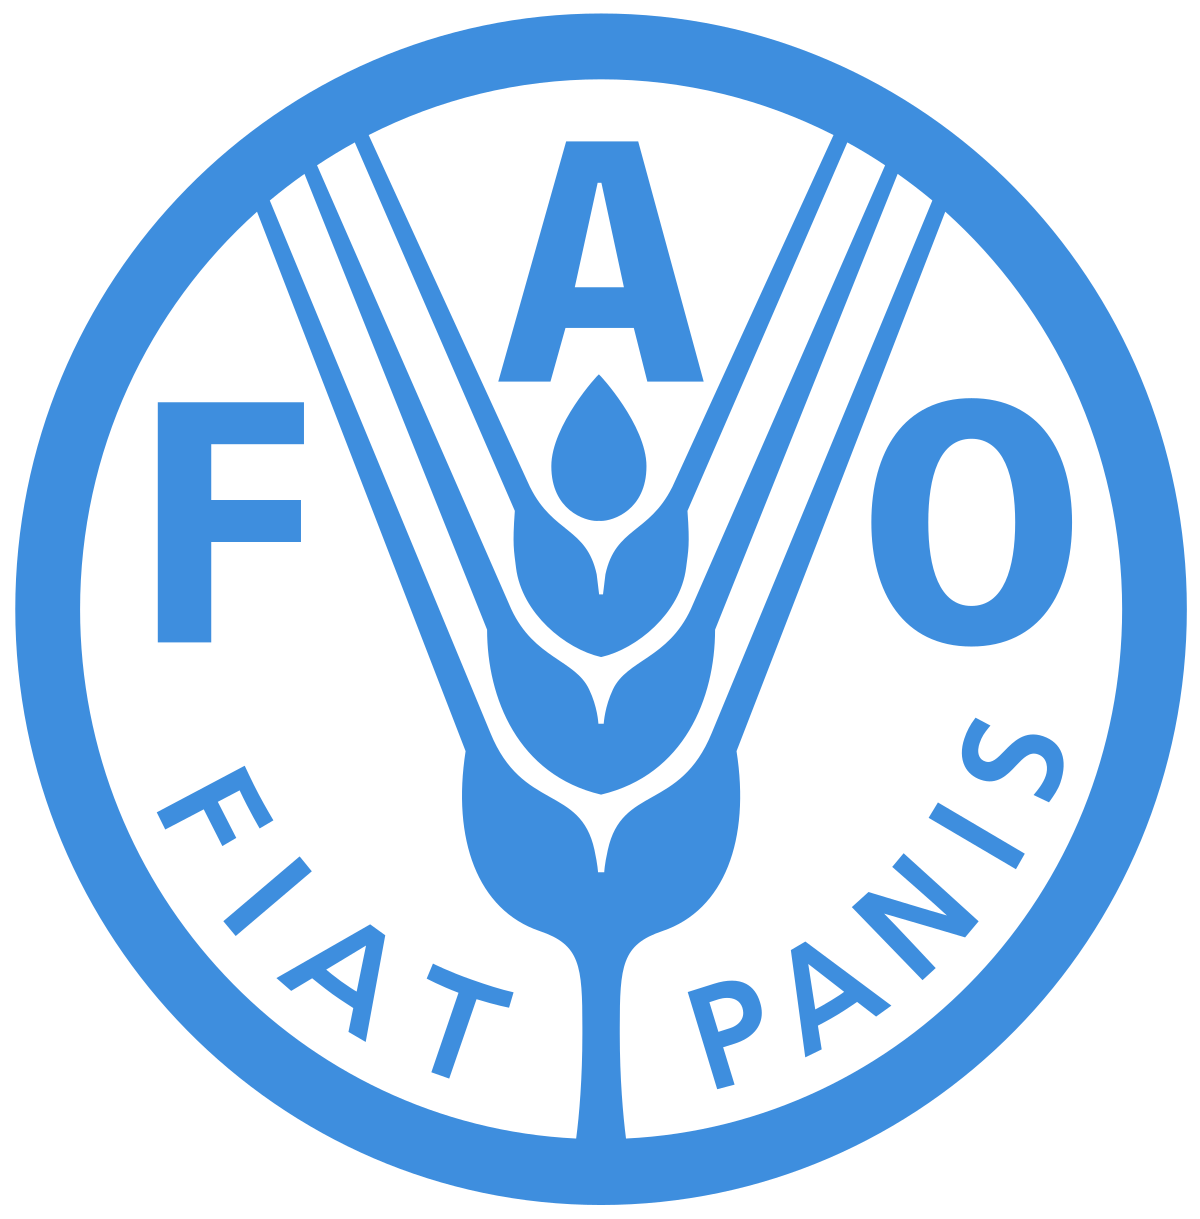 Emblema da FAO com o seu lema latino, Fiat Panis ("Haja pão")